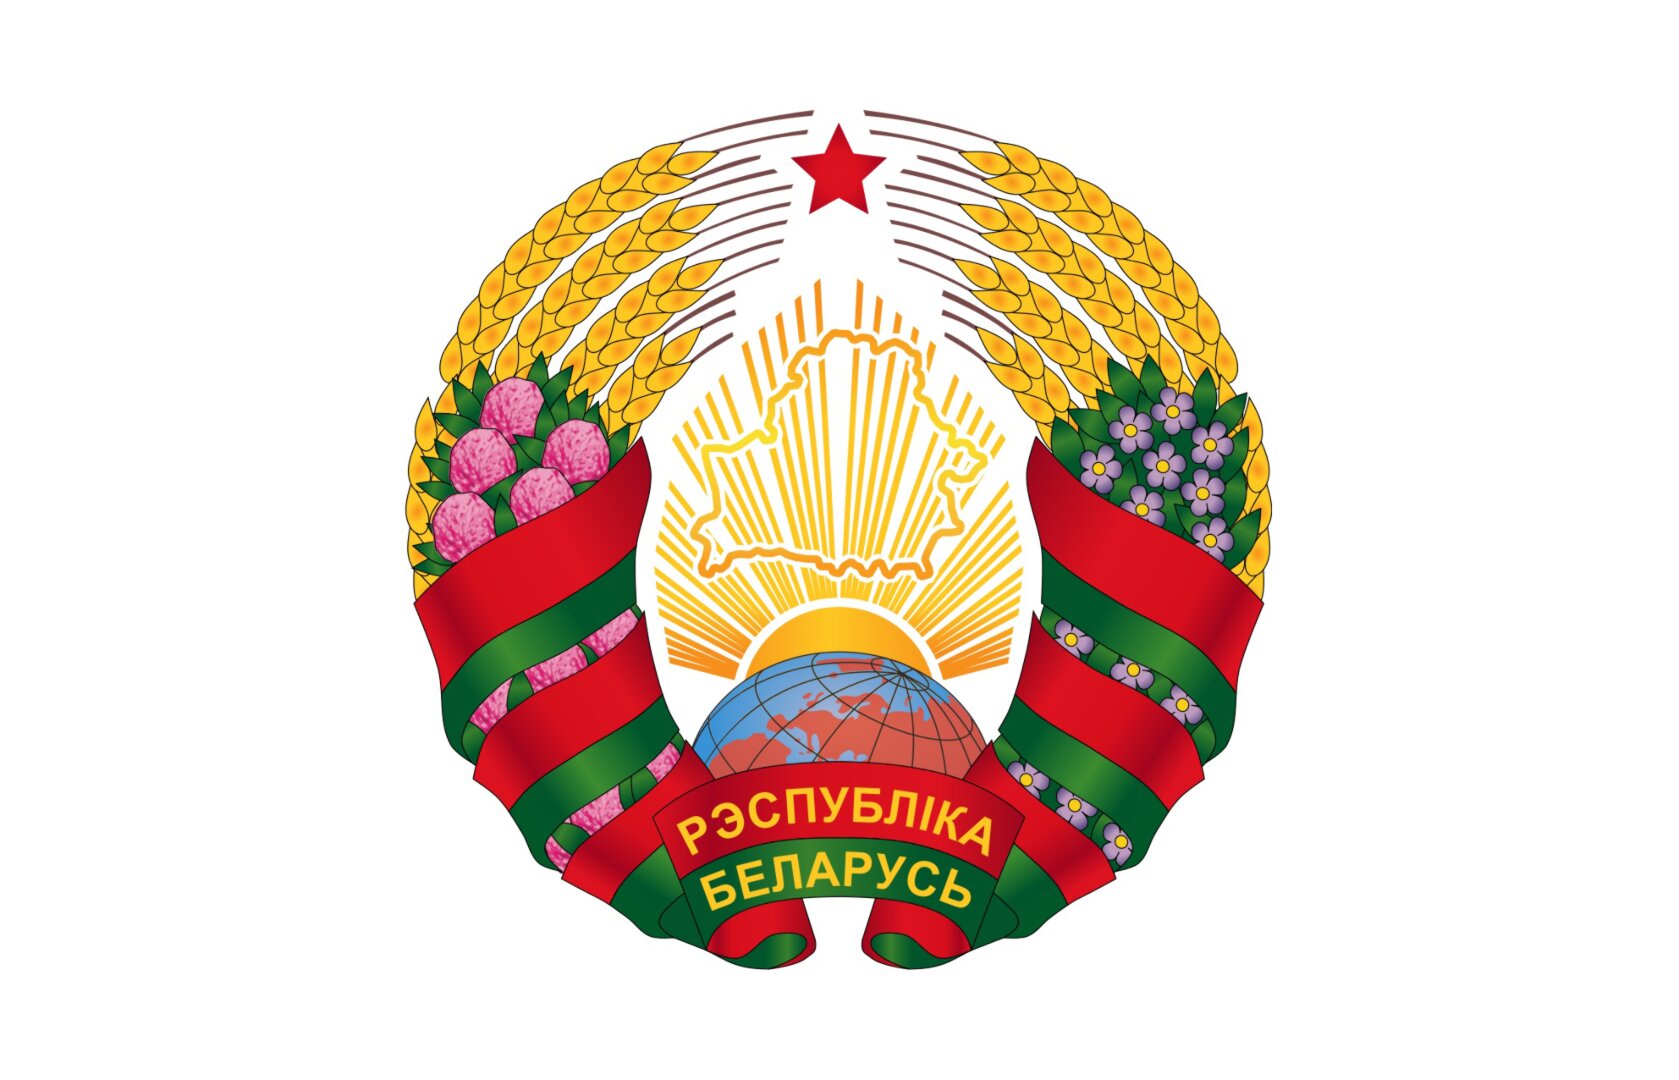 Новый герб и флаг Республики Беларусь 2021